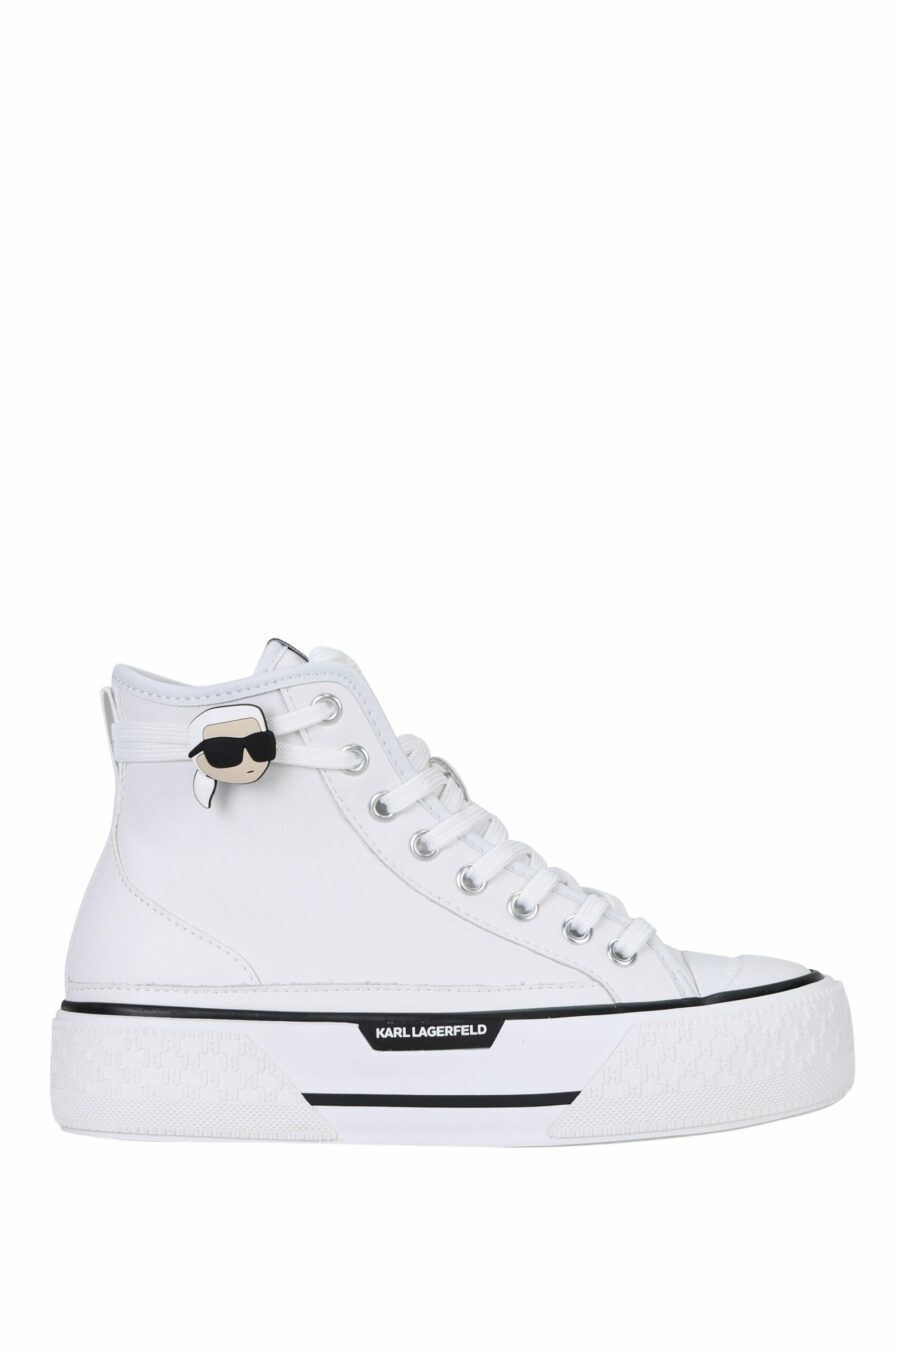 Zapatillas blancas altas de cuero con suela blanca y logo "karl" - 5059529322974 scaled